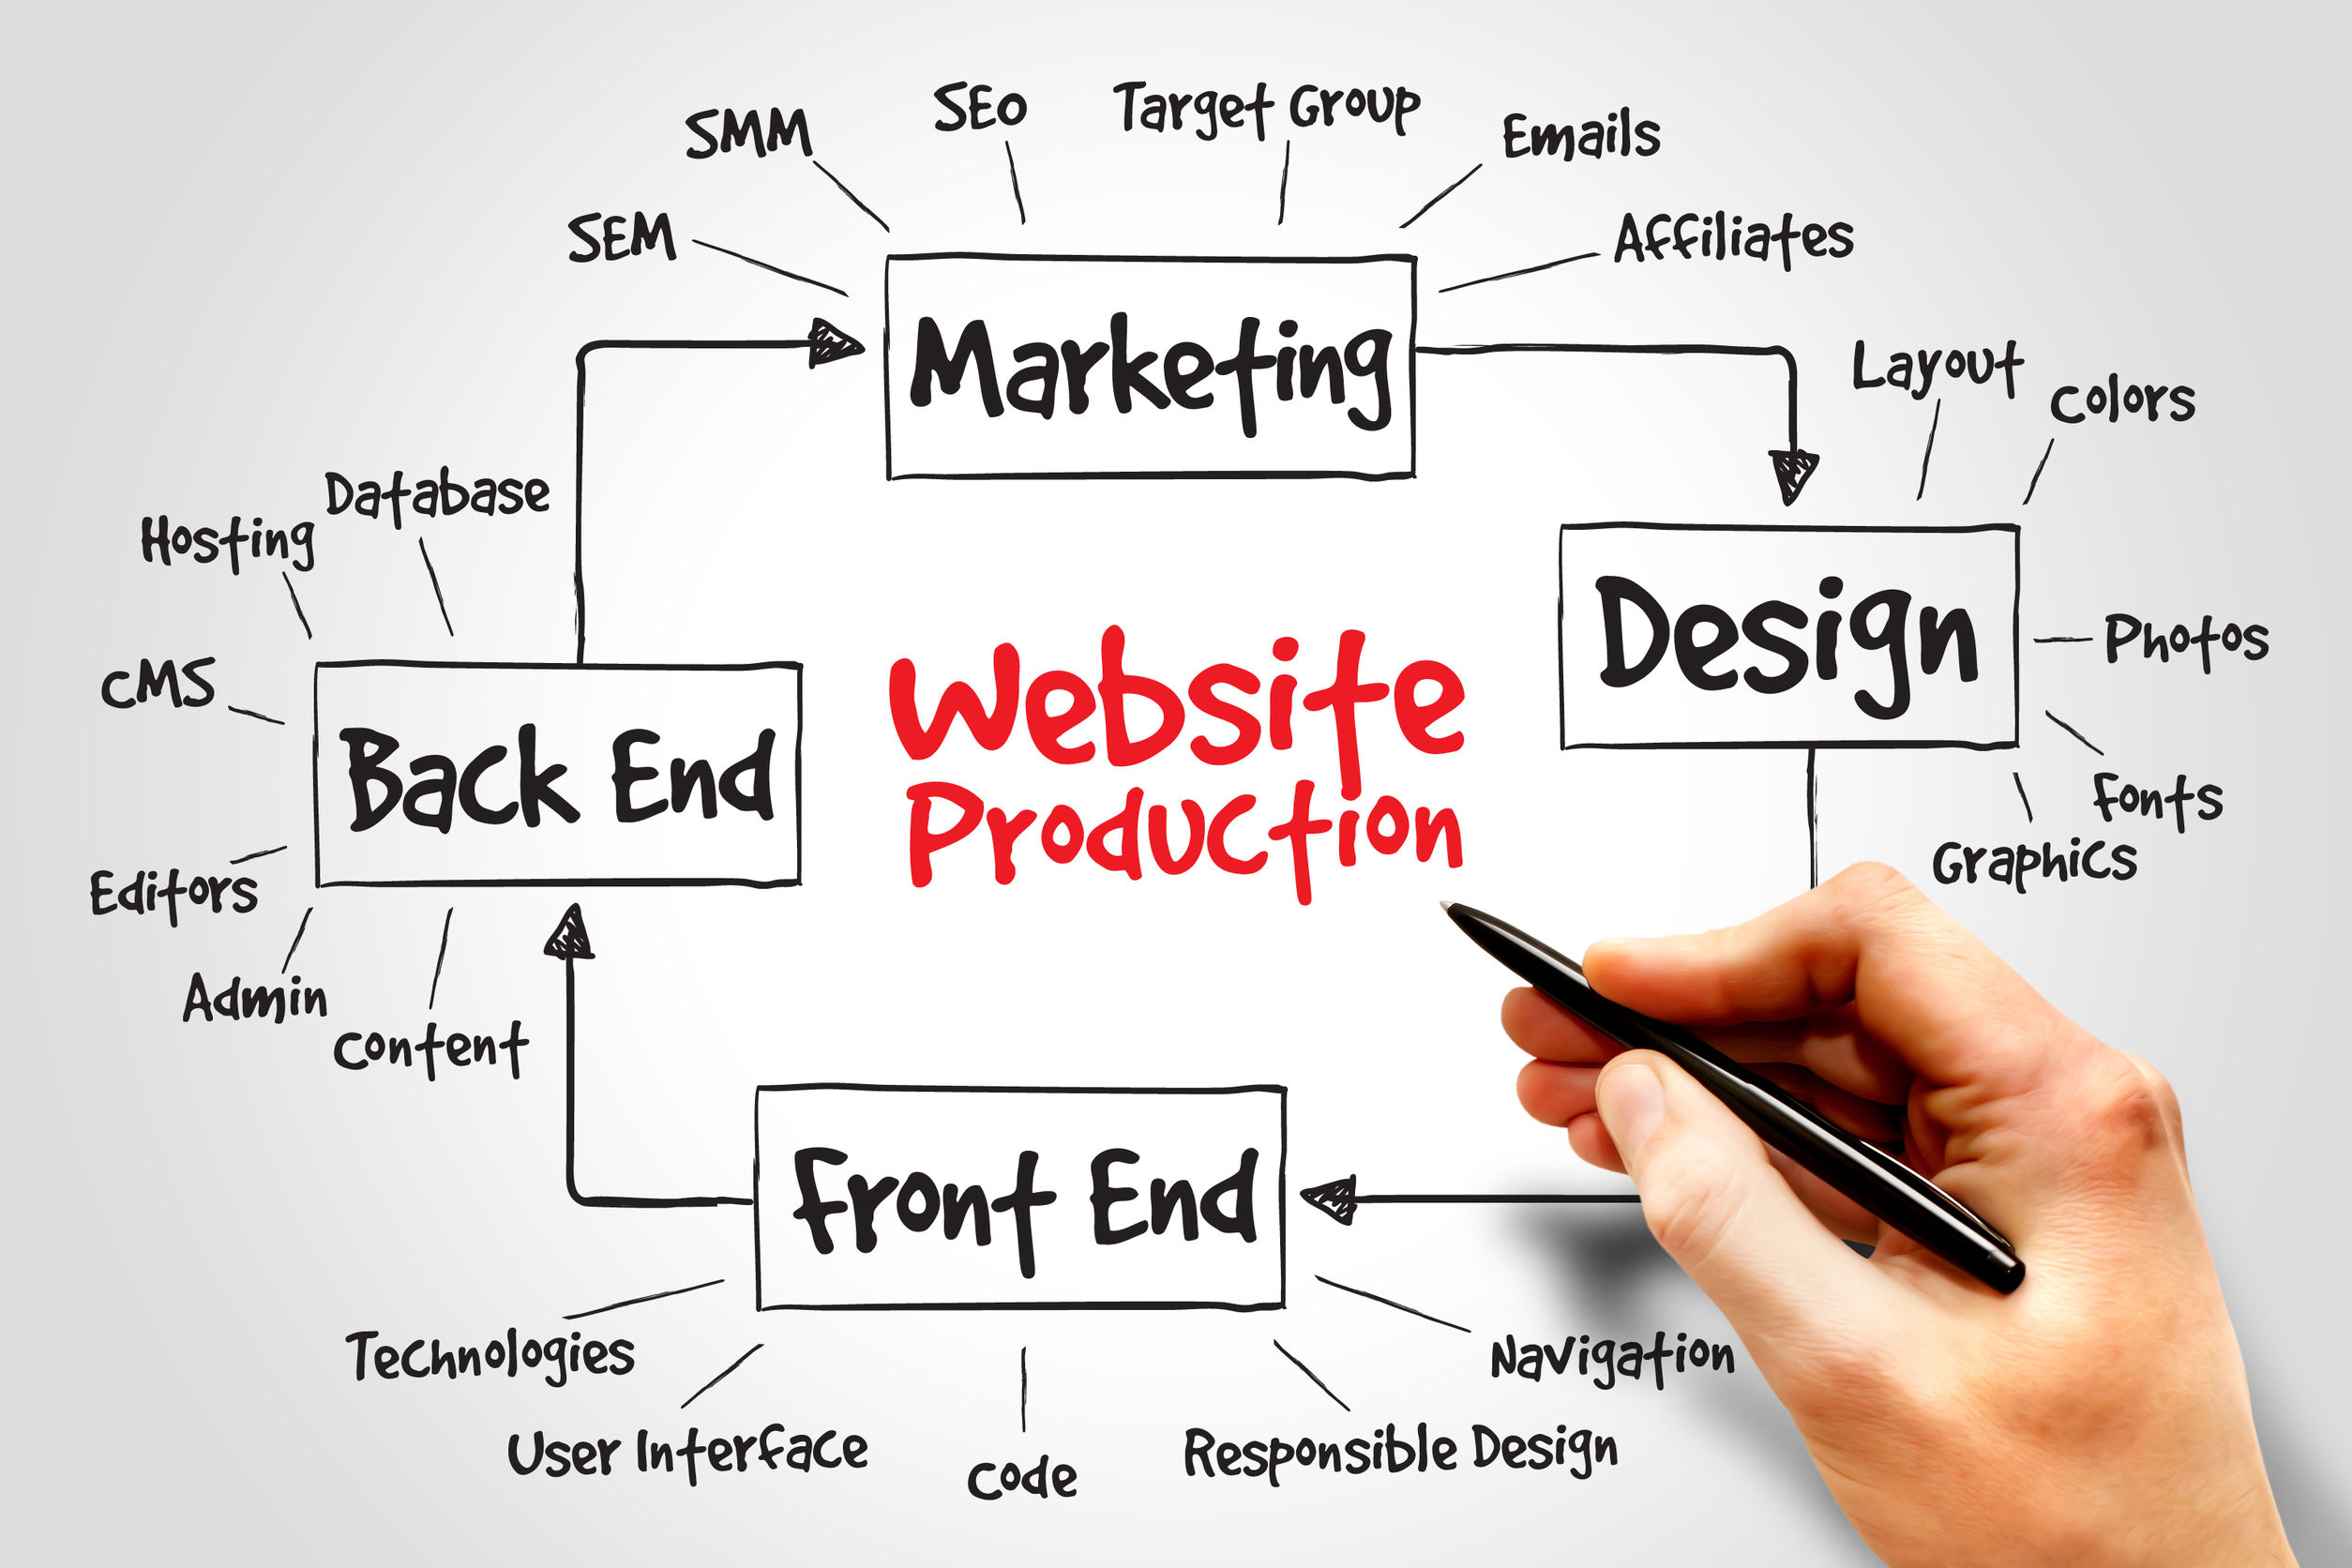 37919836 - website production process, business concept